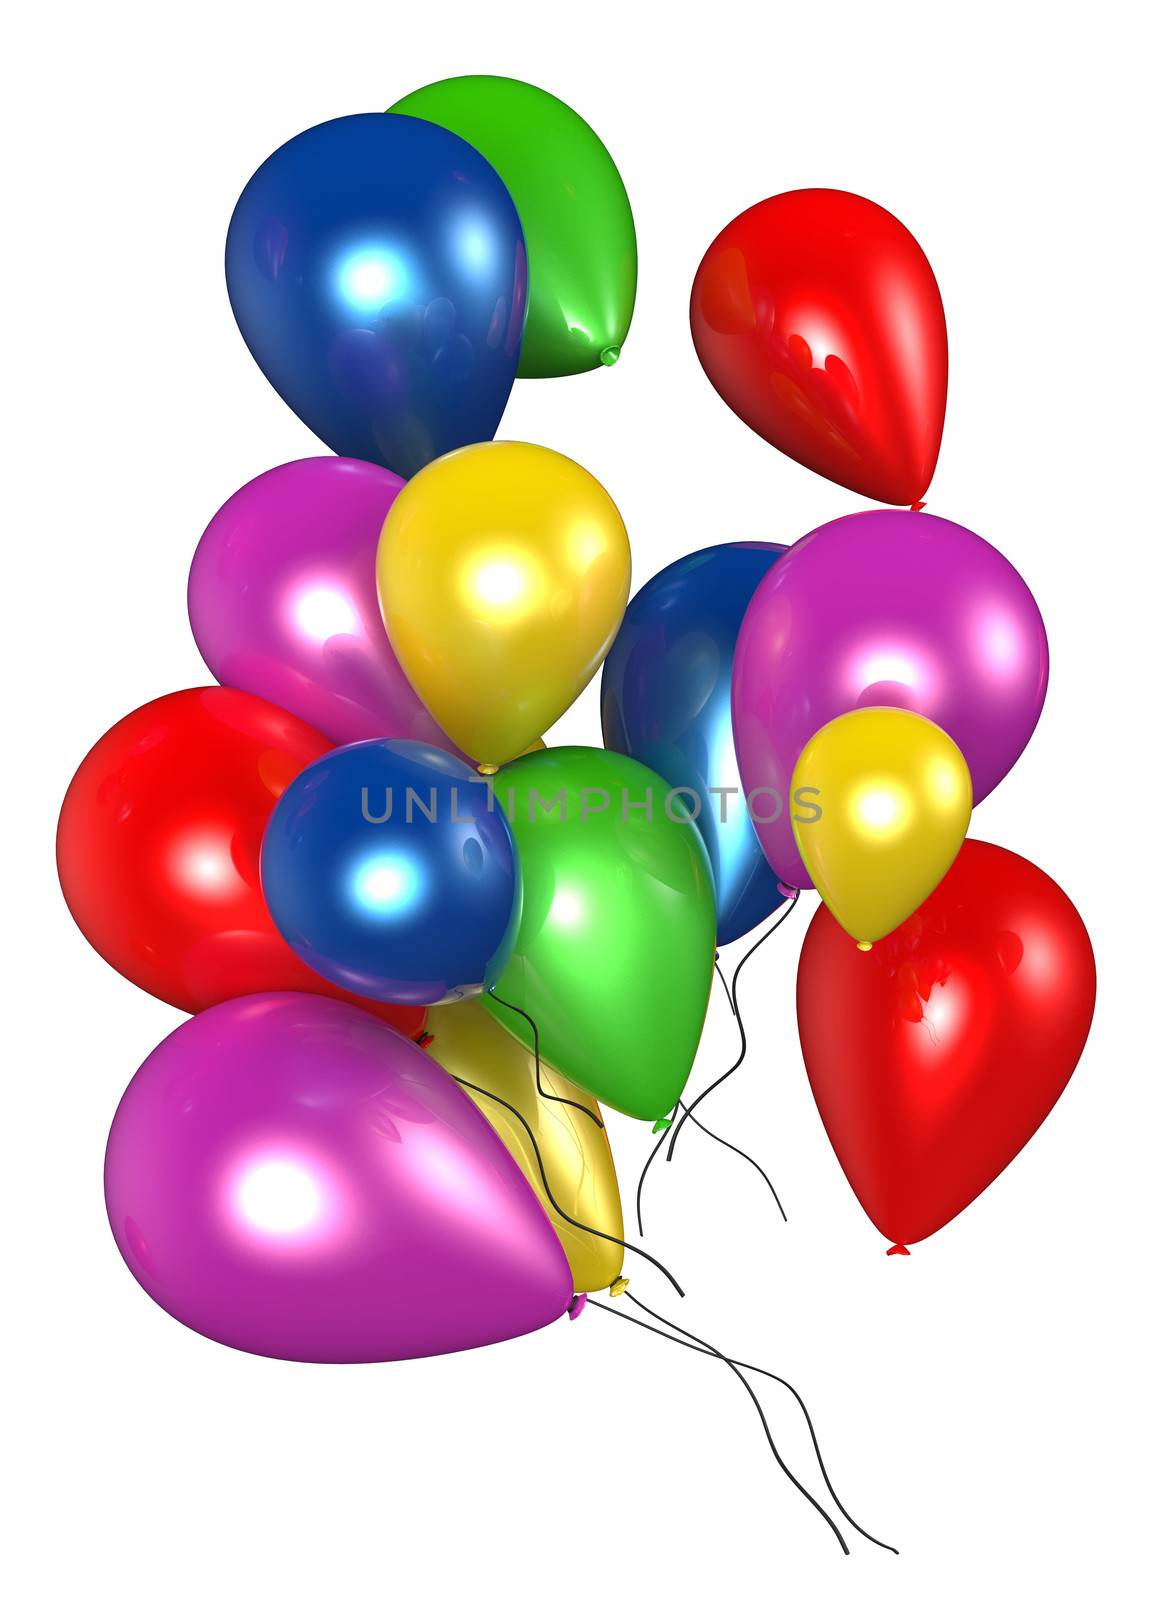 Balloons by Yurkoman